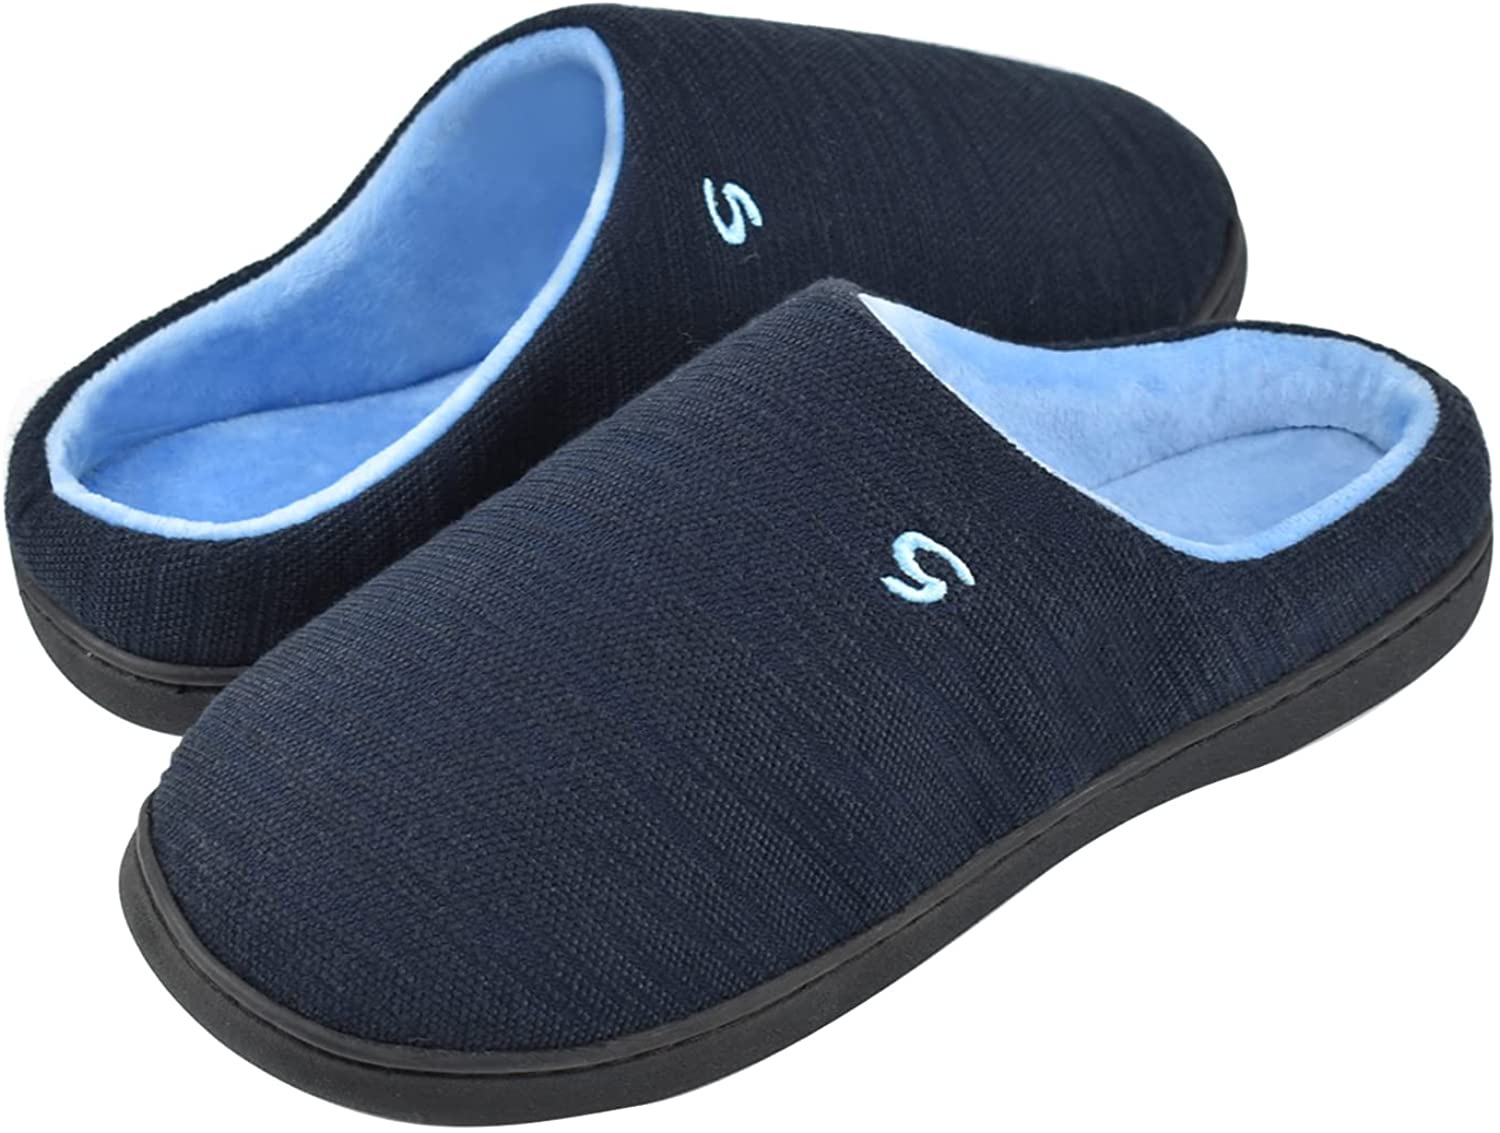 Unisex House Slippers,Non-Slip Bedroom Slippers for Men Size 5,6,7,8,9,10,11,12,13,14 MEMON Mens Indoor Slippers Memory Foam 